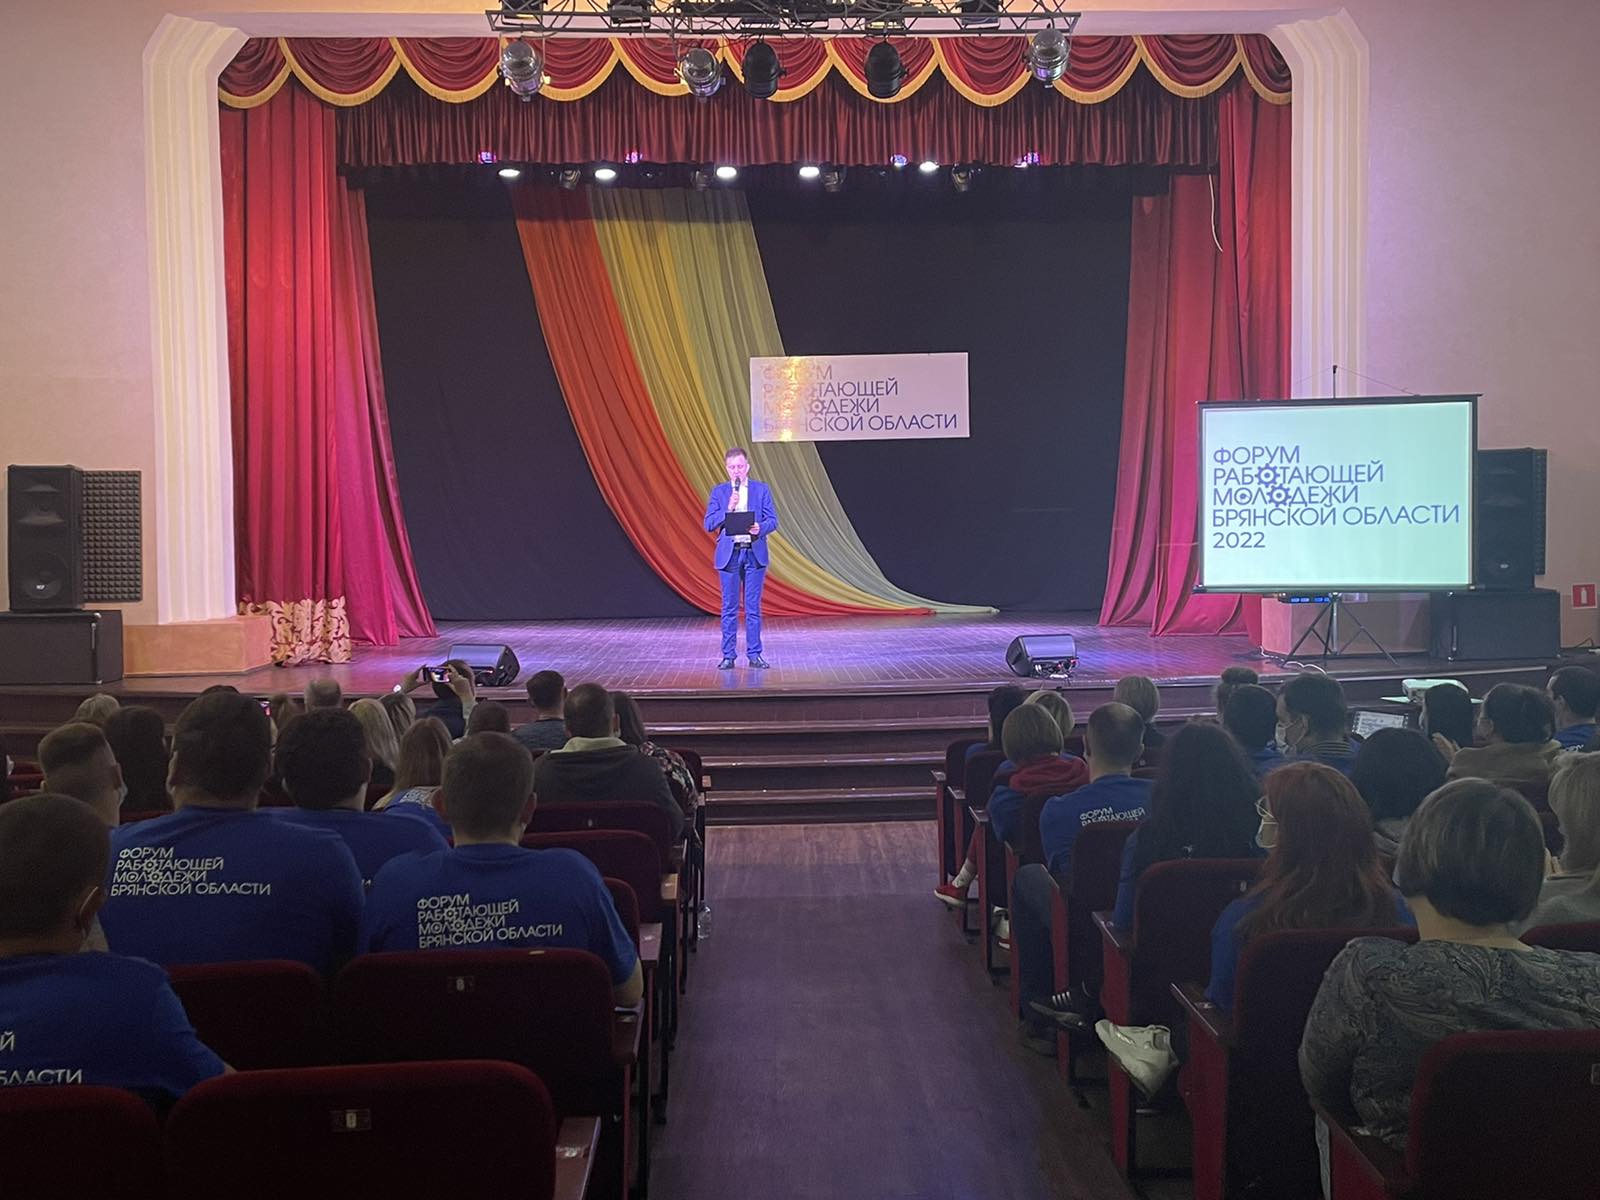 Форум работающей молодёжи Брянской области открылся в Жуковке